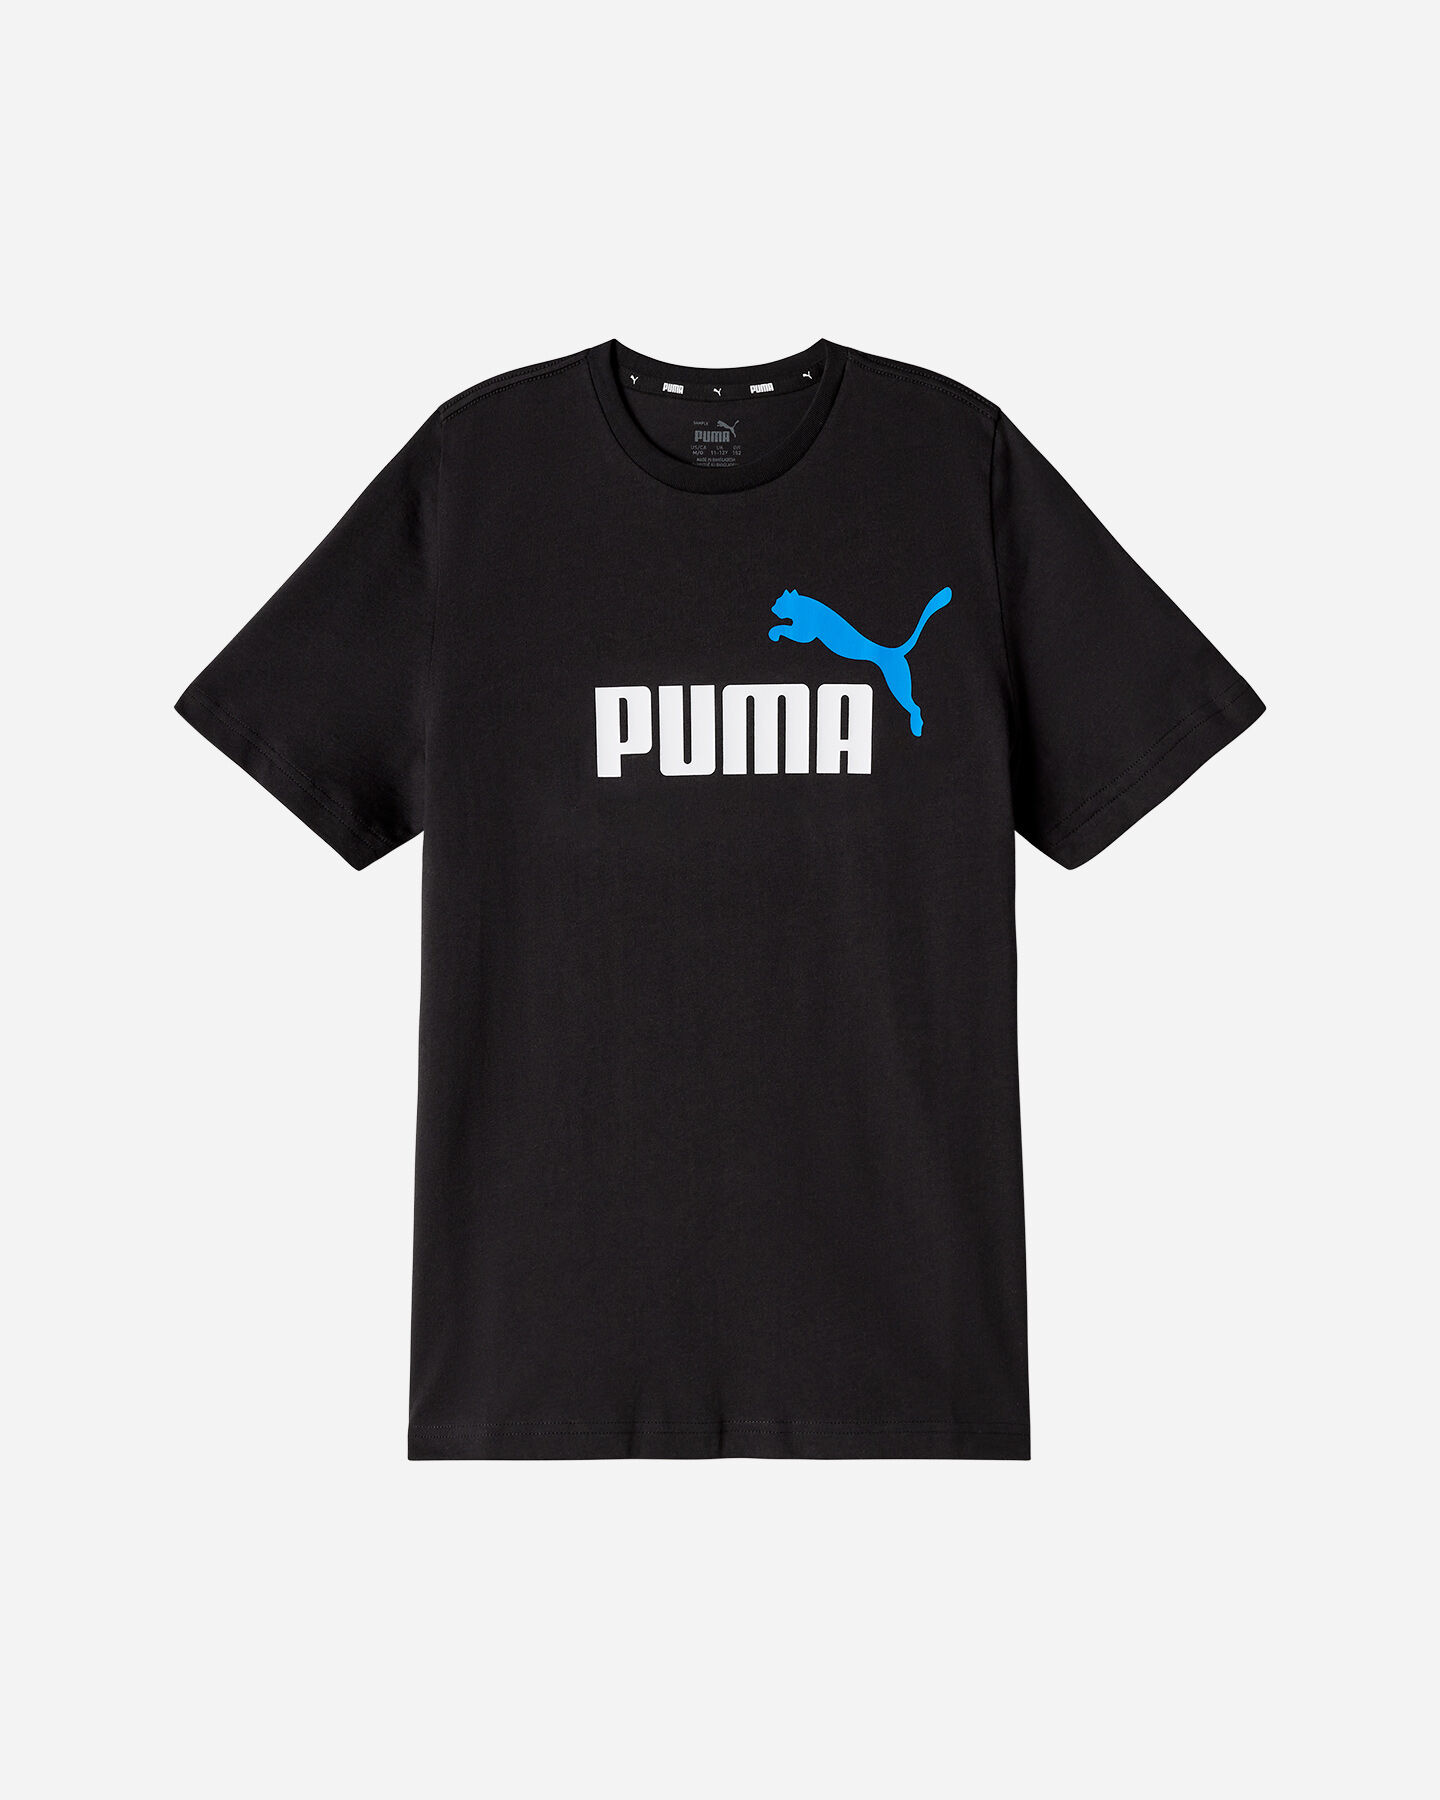  T-Shirt PUMA ESSENTIAL+ LOGO JR S5606791|10|104 scatto 0